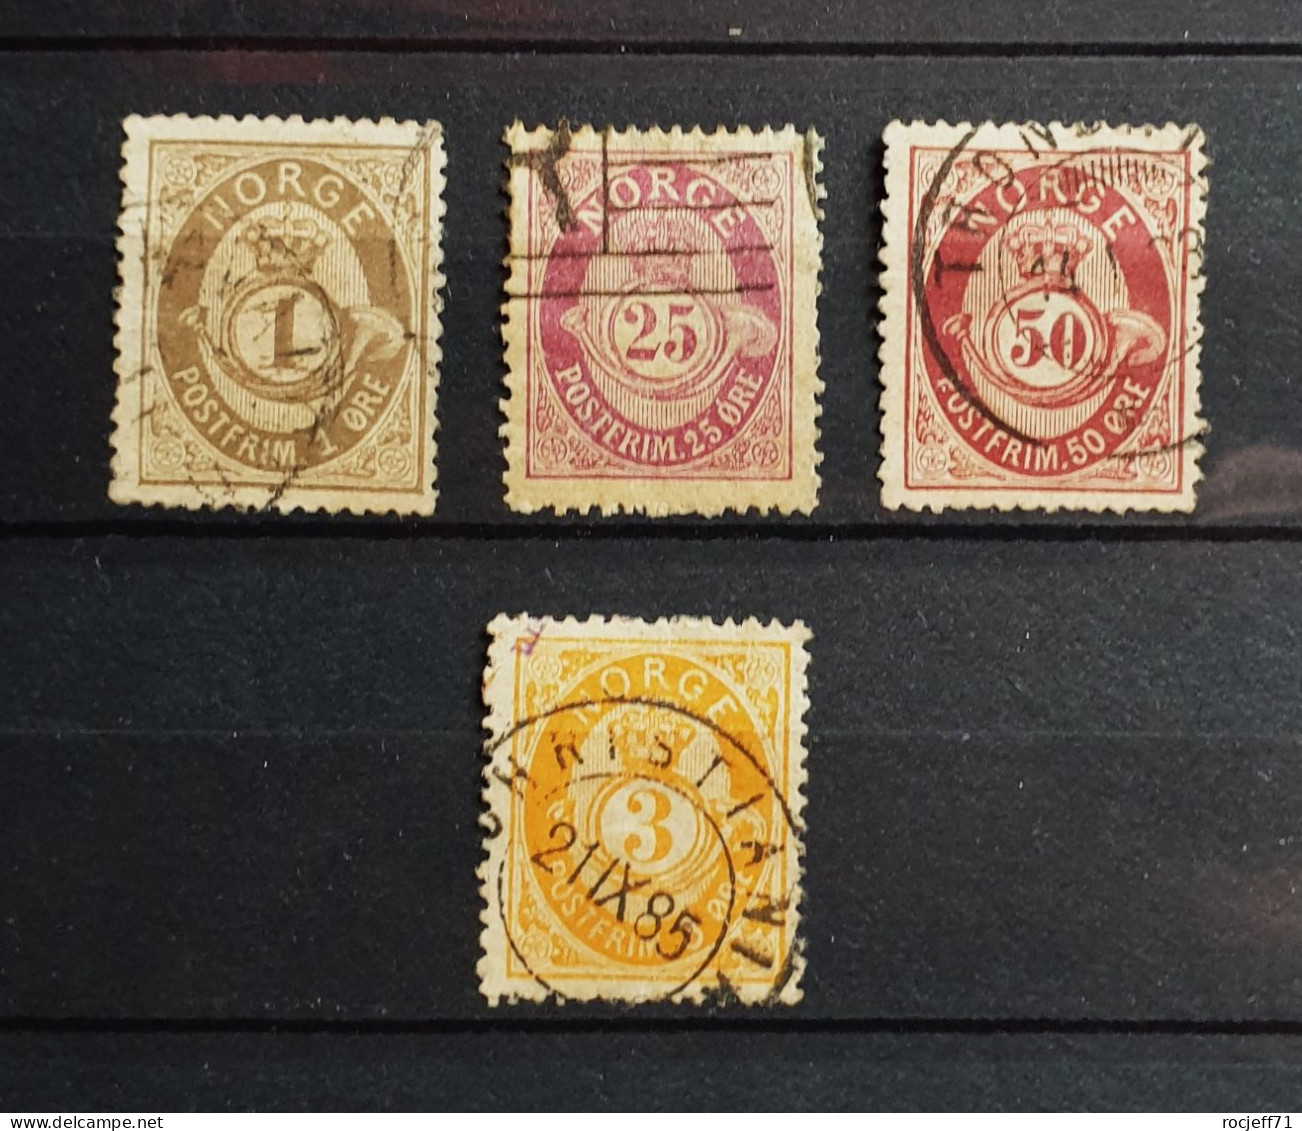 05 - 24 - Gino - Norvège Lot De Vieux Timbres - Norge Old Stamps - Value 100 Euros - Oblitérés